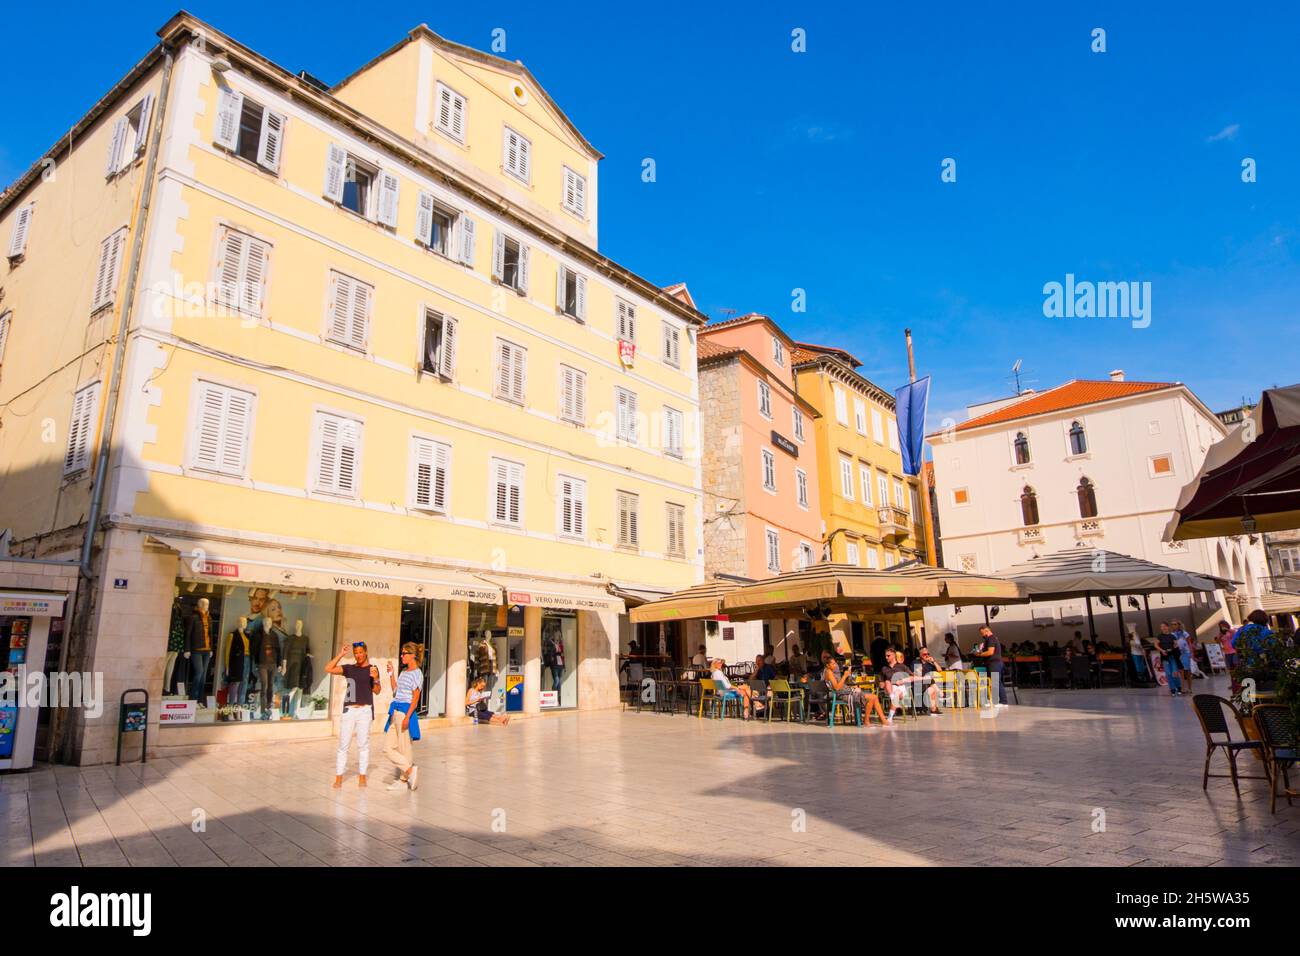 Narodni Trg, Grad, old town, Split, Croatia Stock Photo